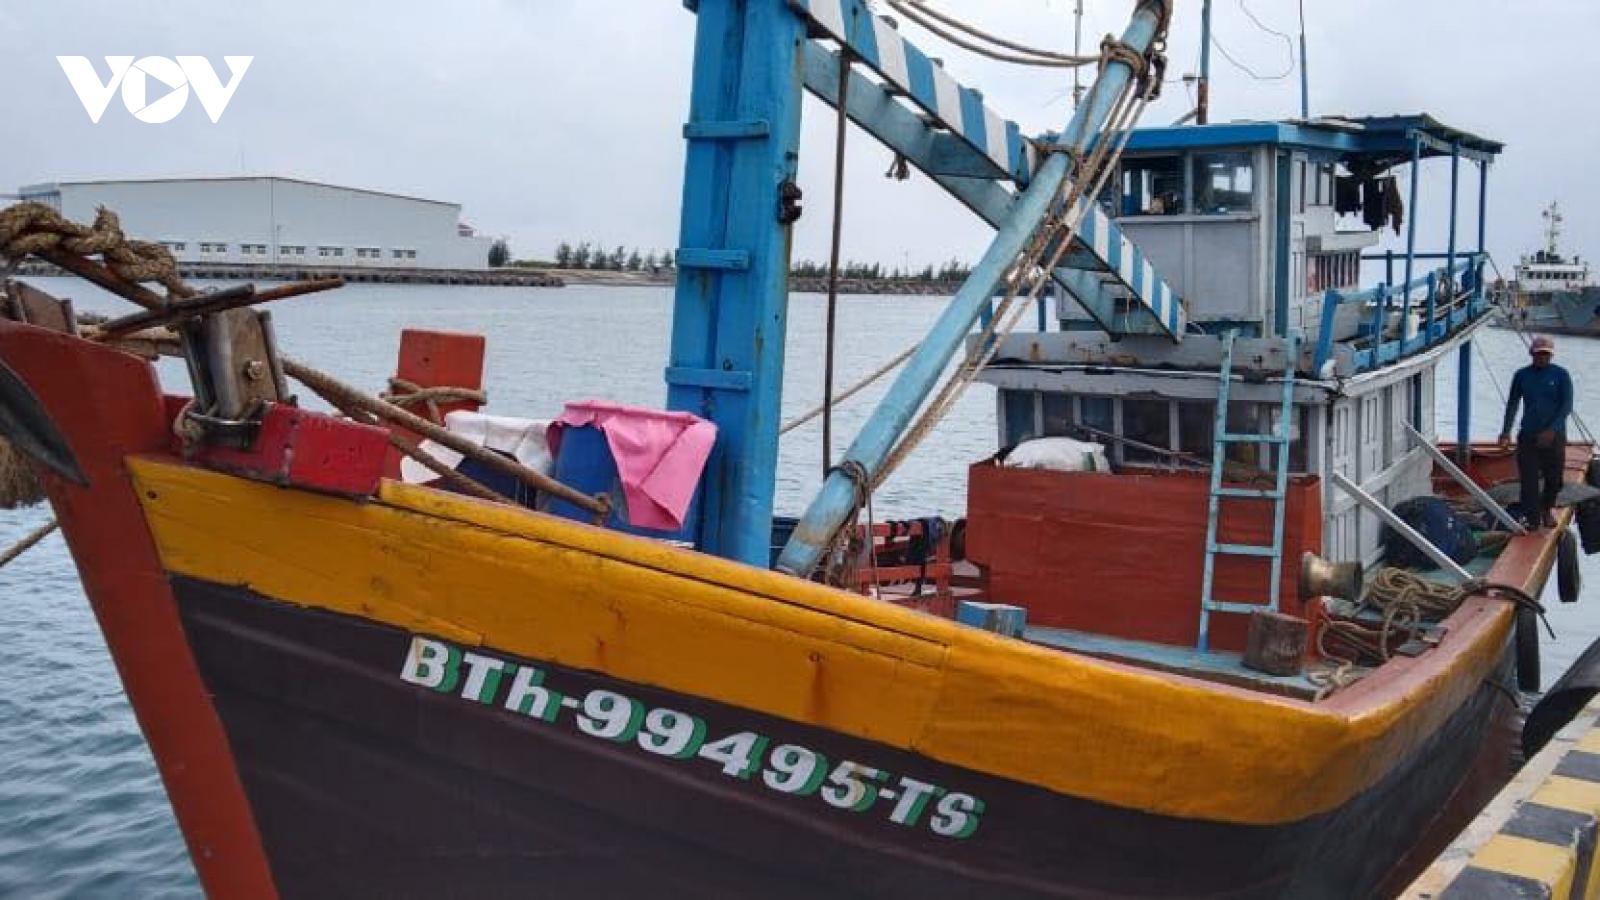 Hỗ trợ sửa chữa thành công sự cố cho 2 tàu cá ngư dân tại âu tàu Trường Sa